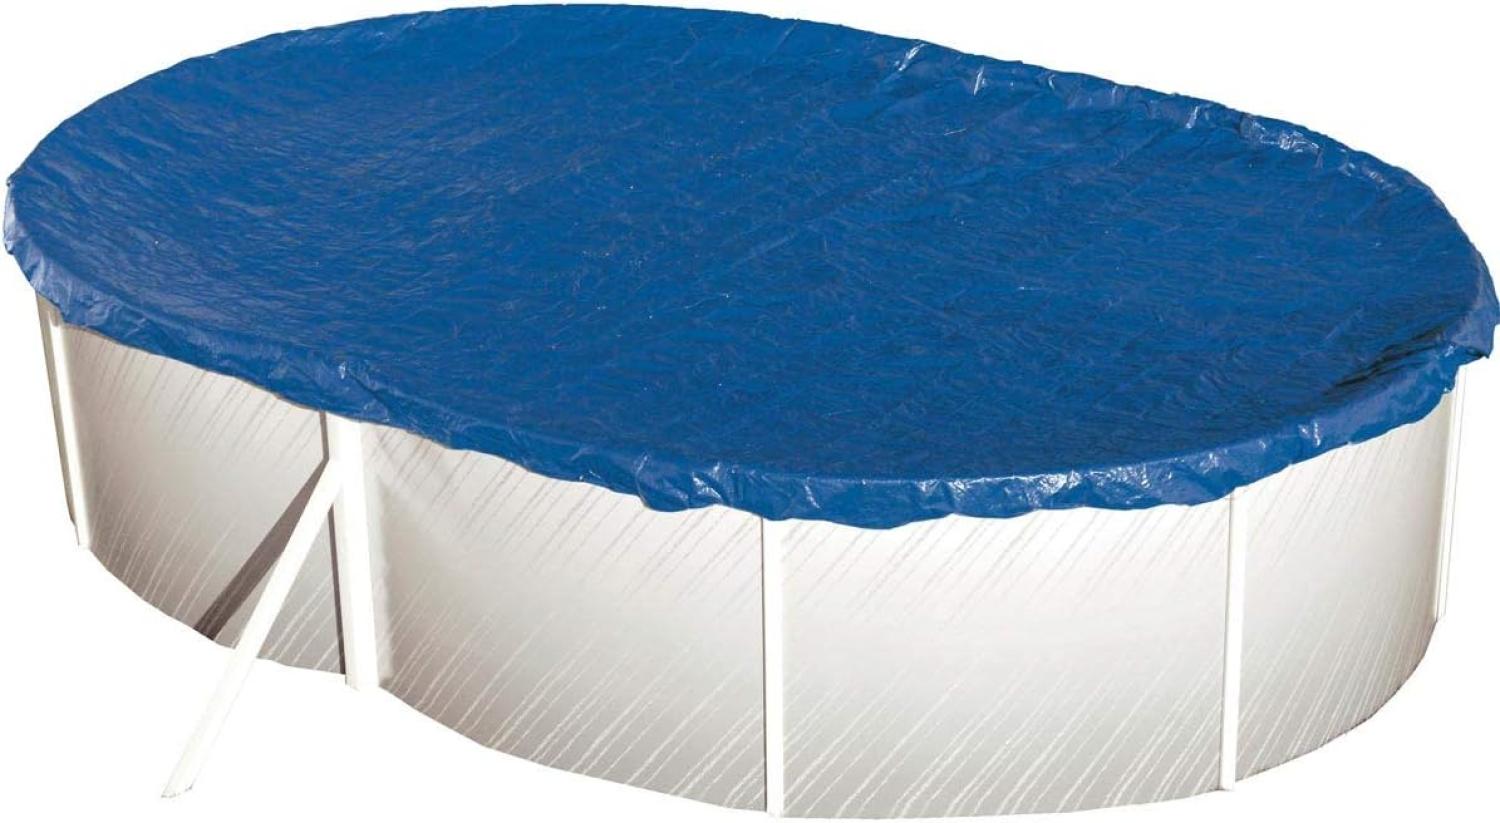 Steinbach Abdeckplane "Extra" für ovale Swimming Pool Stahlwandbecken, blau, 730 x 370 cm Bild 1